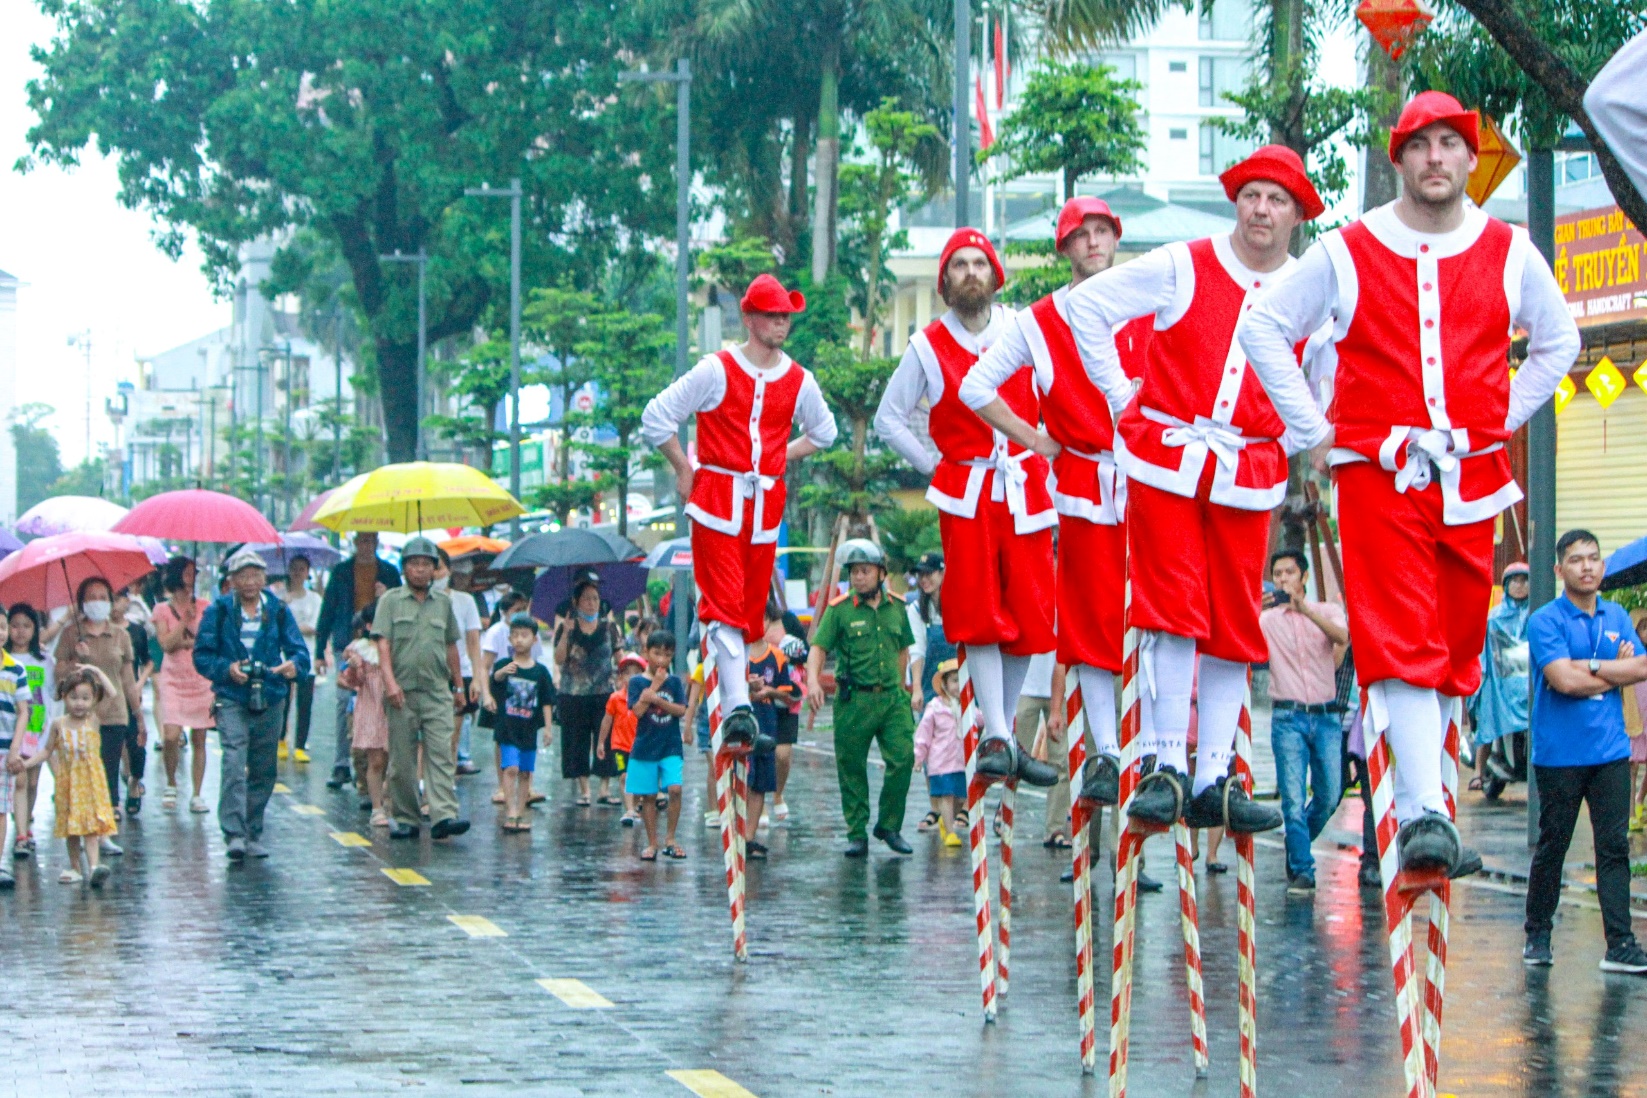 Thú vị đoàn nghệ thuật biểu diễn cà kheo trên đường phố Huế - 1